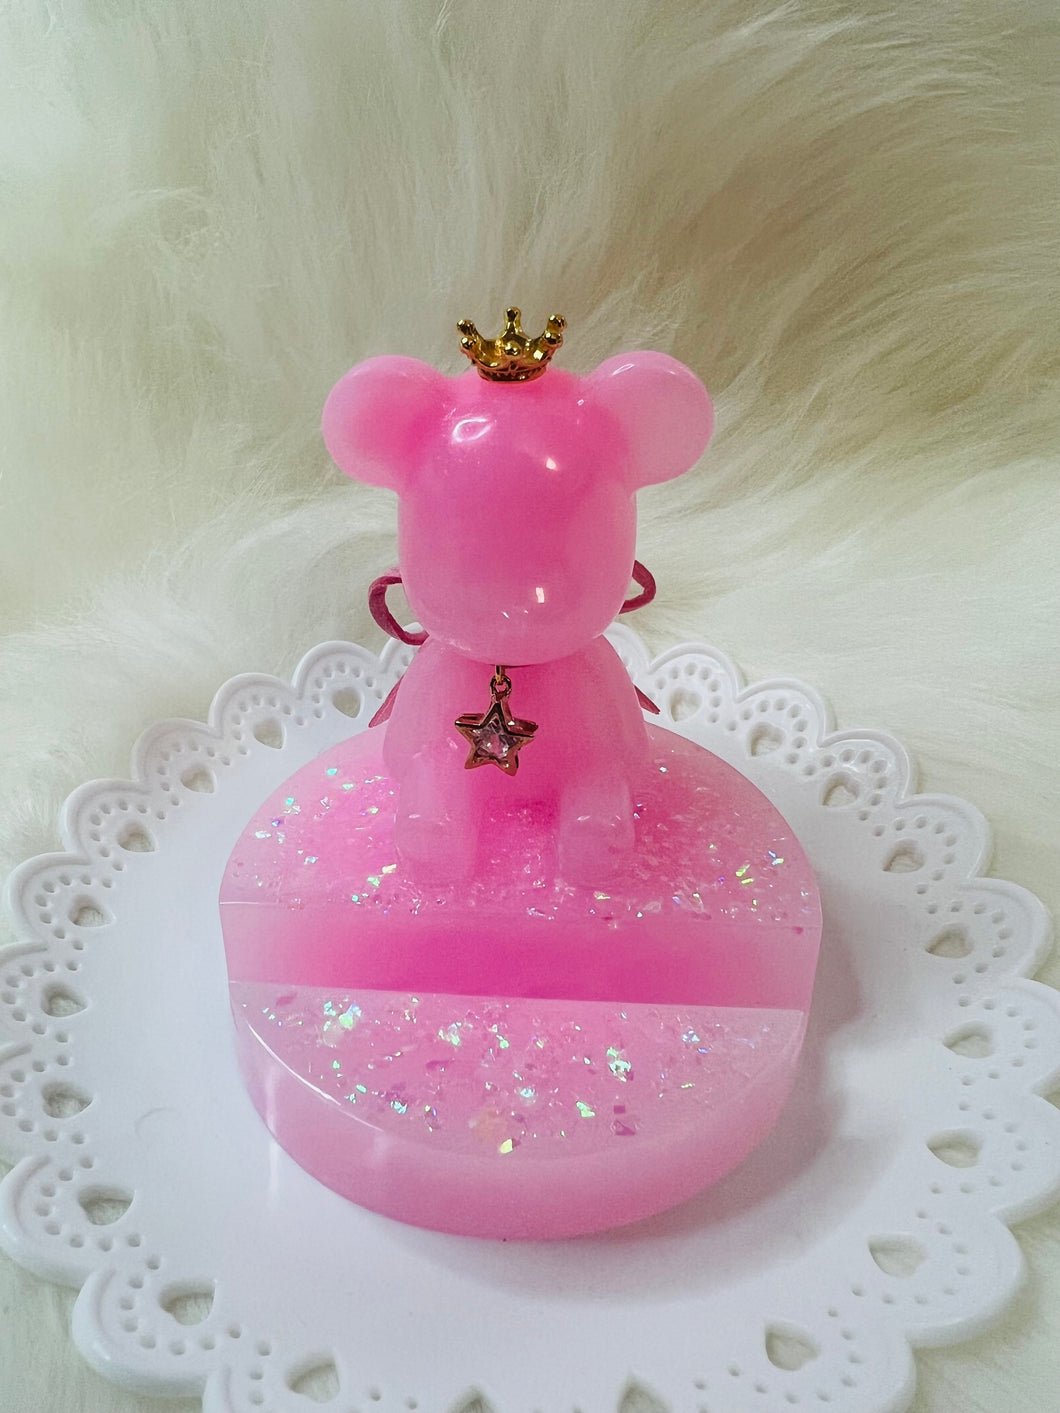 Cute pink bear business card holder